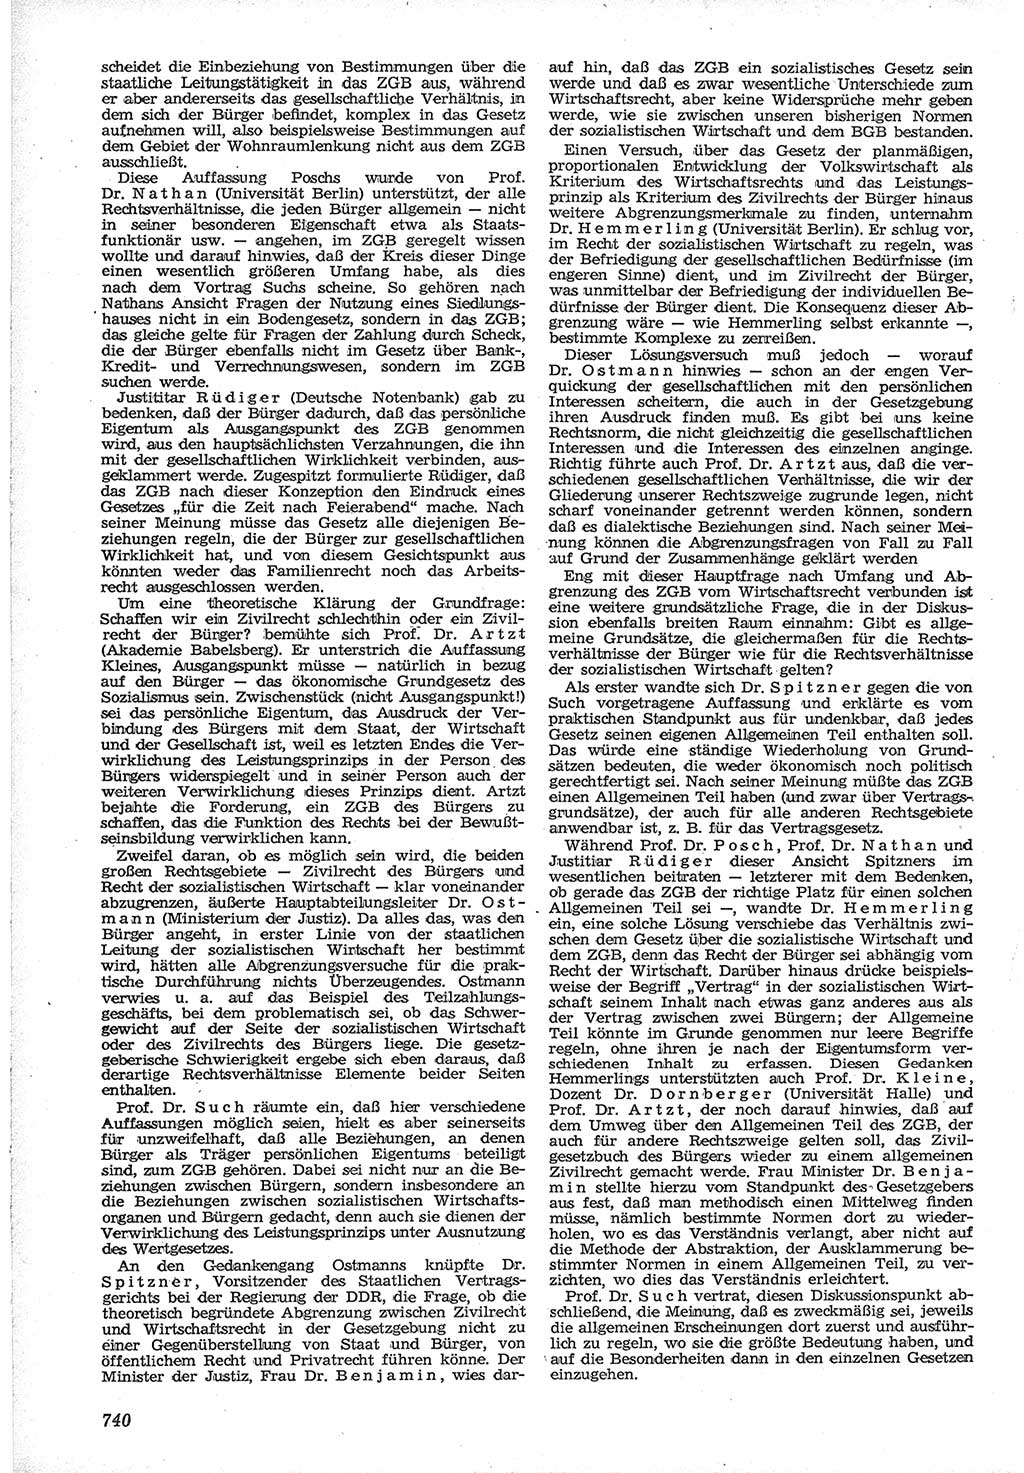 Neue Justiz (NJ), Zeitschrift für Recht und Rechtswissenschaft [Deutsche Demokratische Republik (DDR)], 12. Jahrgang 1958, Seite 740 (NJ DDR 1958, S. 740)